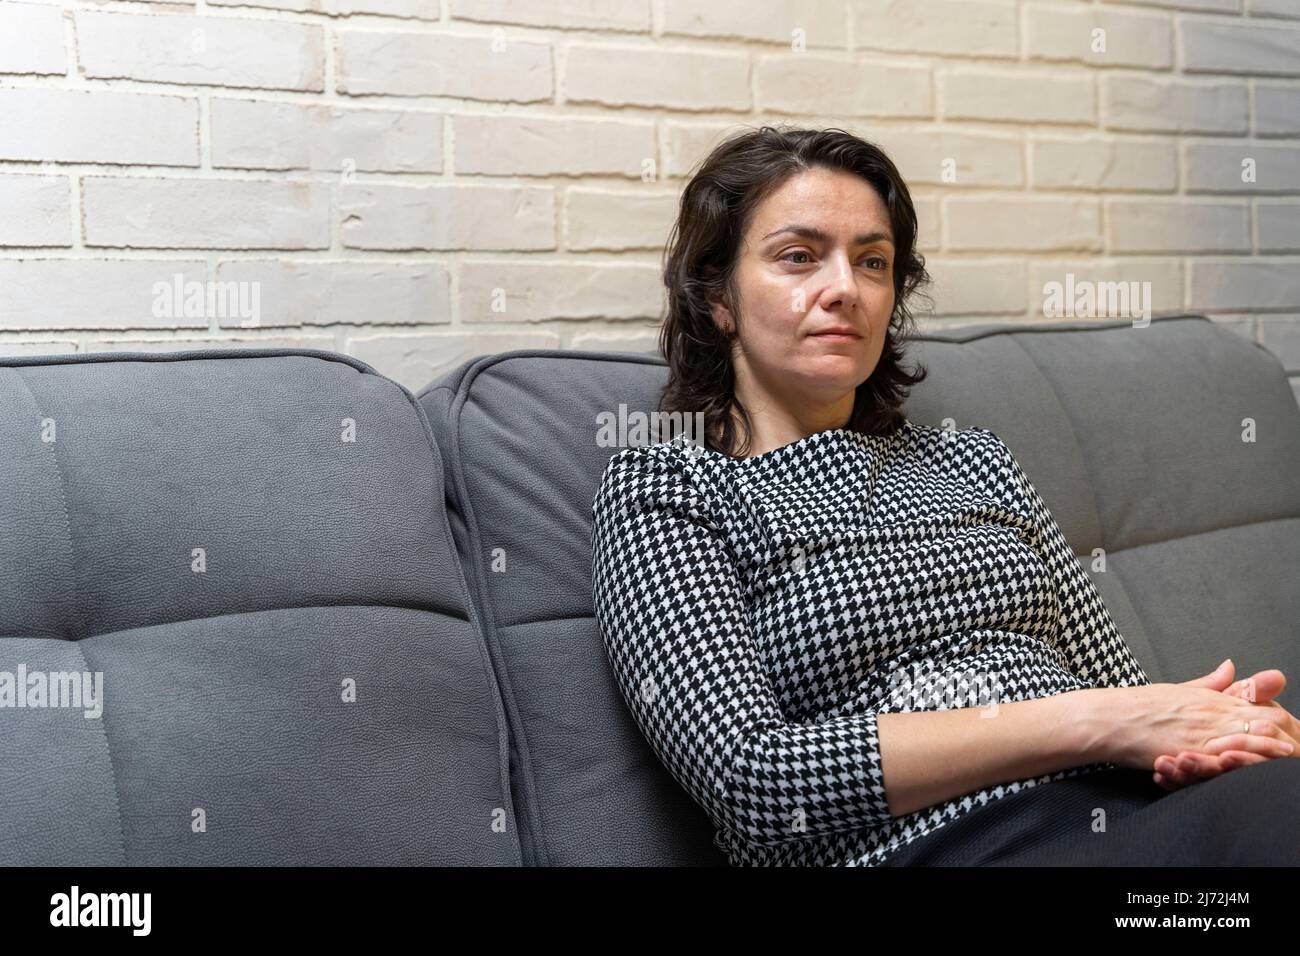 Une femme européenne d'âge moyen aux cheveux foncés est assise sur un canapé Banque D'Images